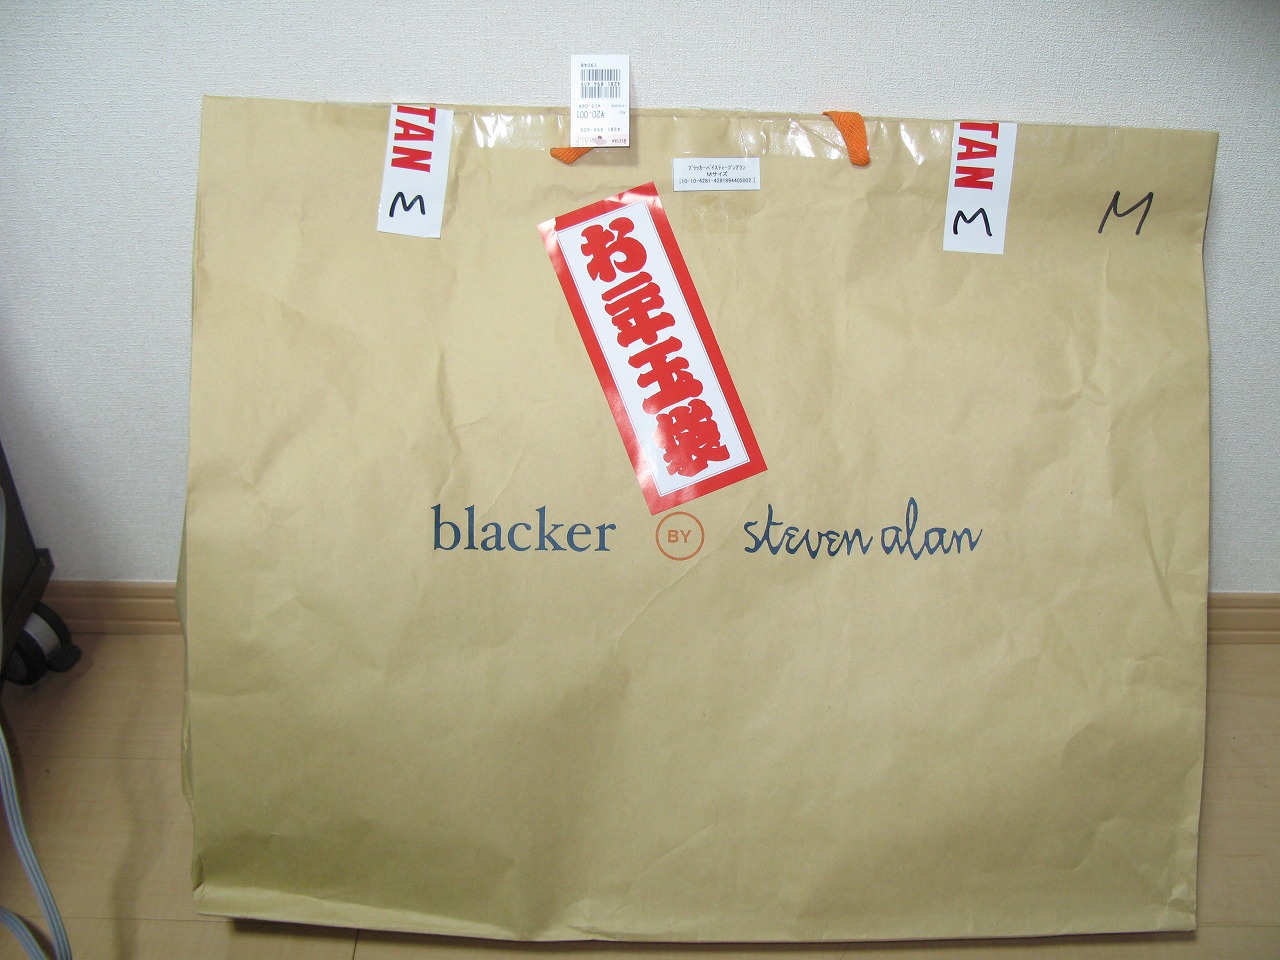 【評価】鬱 【ブランド】blacker BY steven al